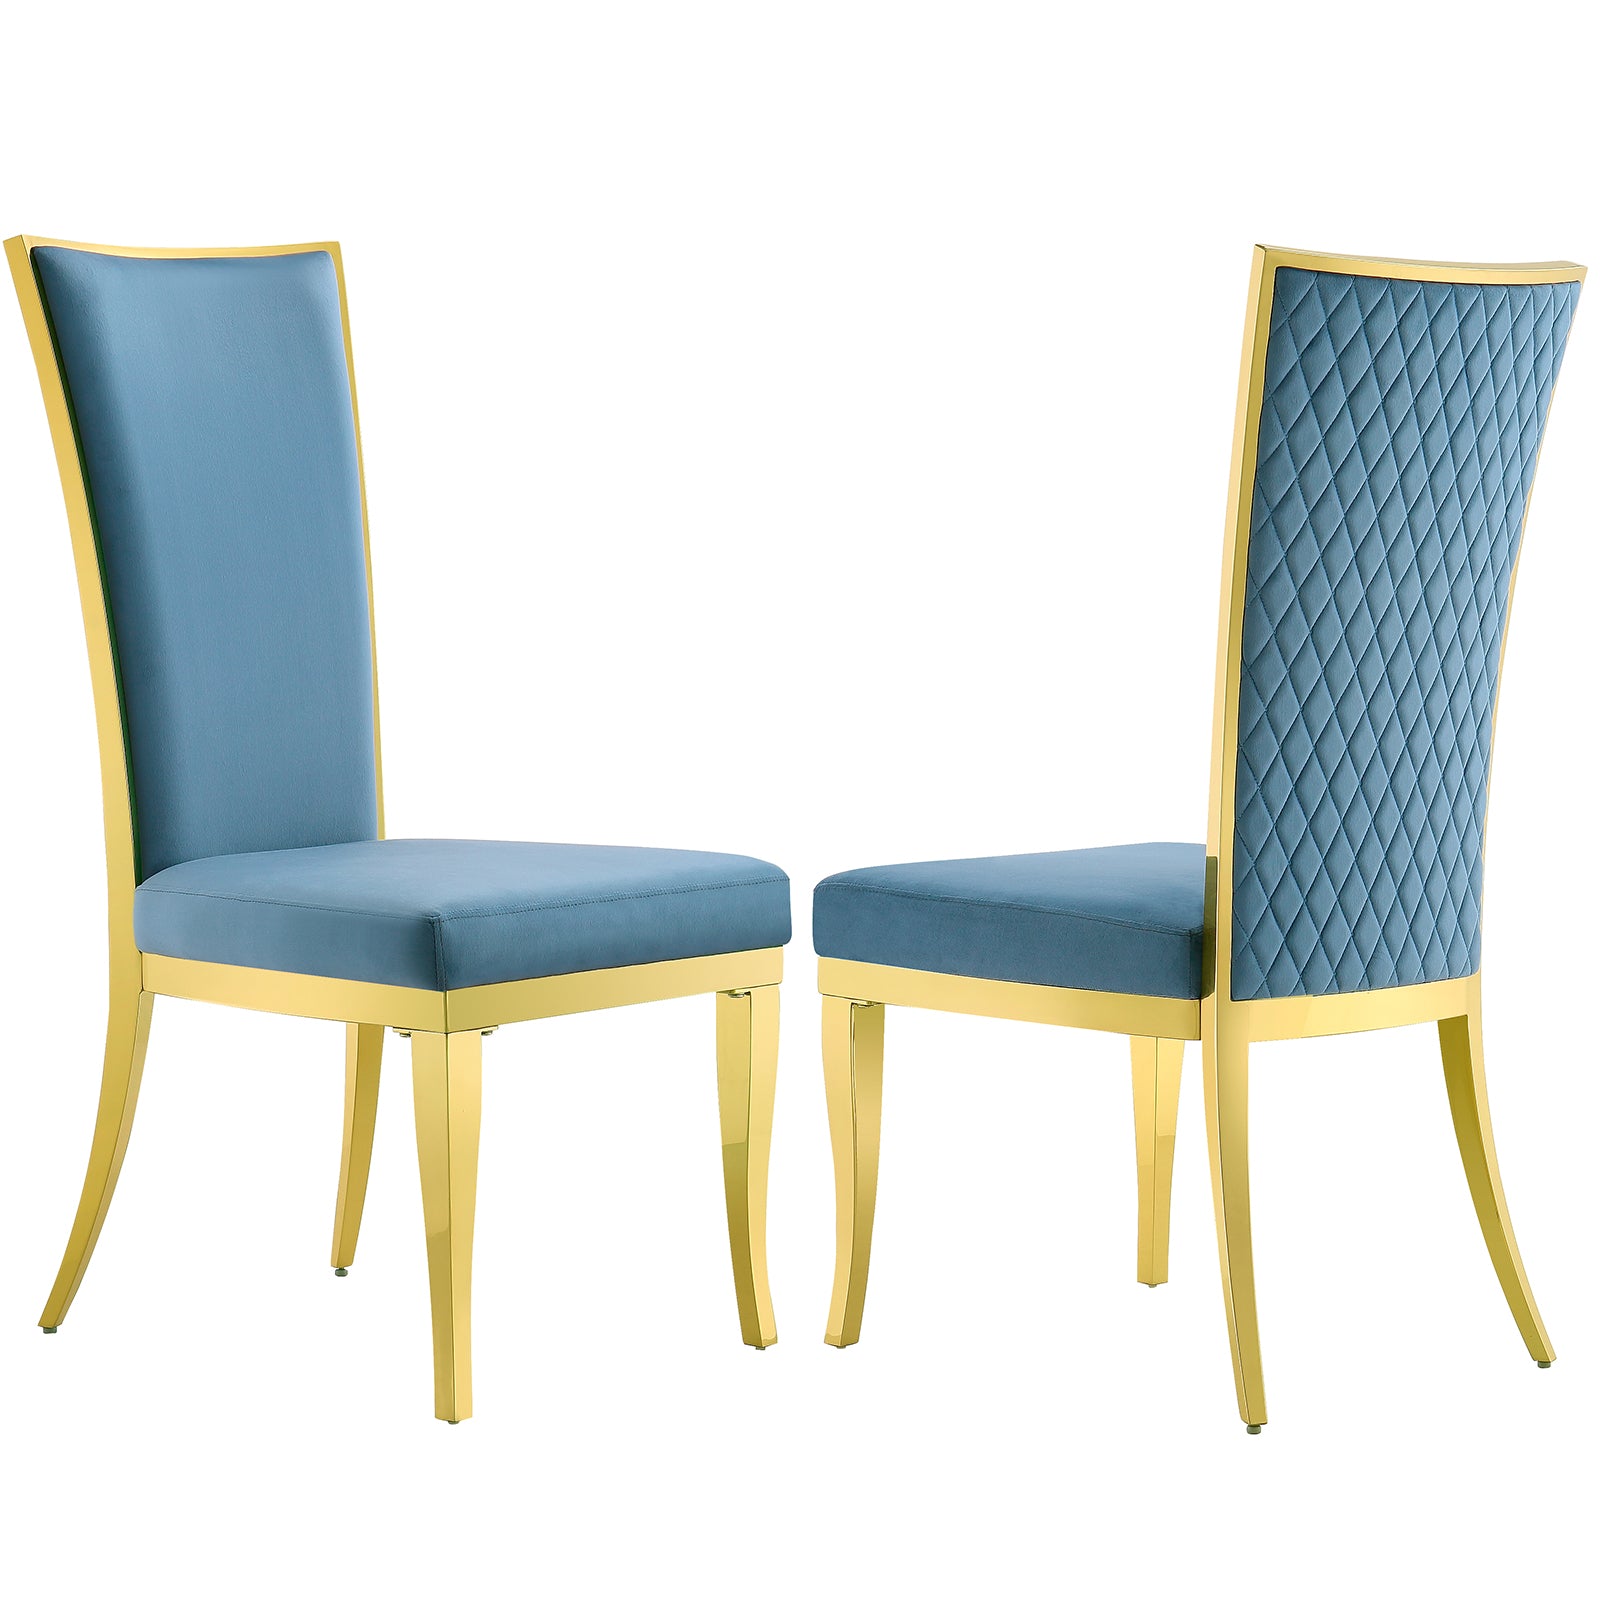 The Elegant AUZ Sky Blue Velvet Dining Chairs